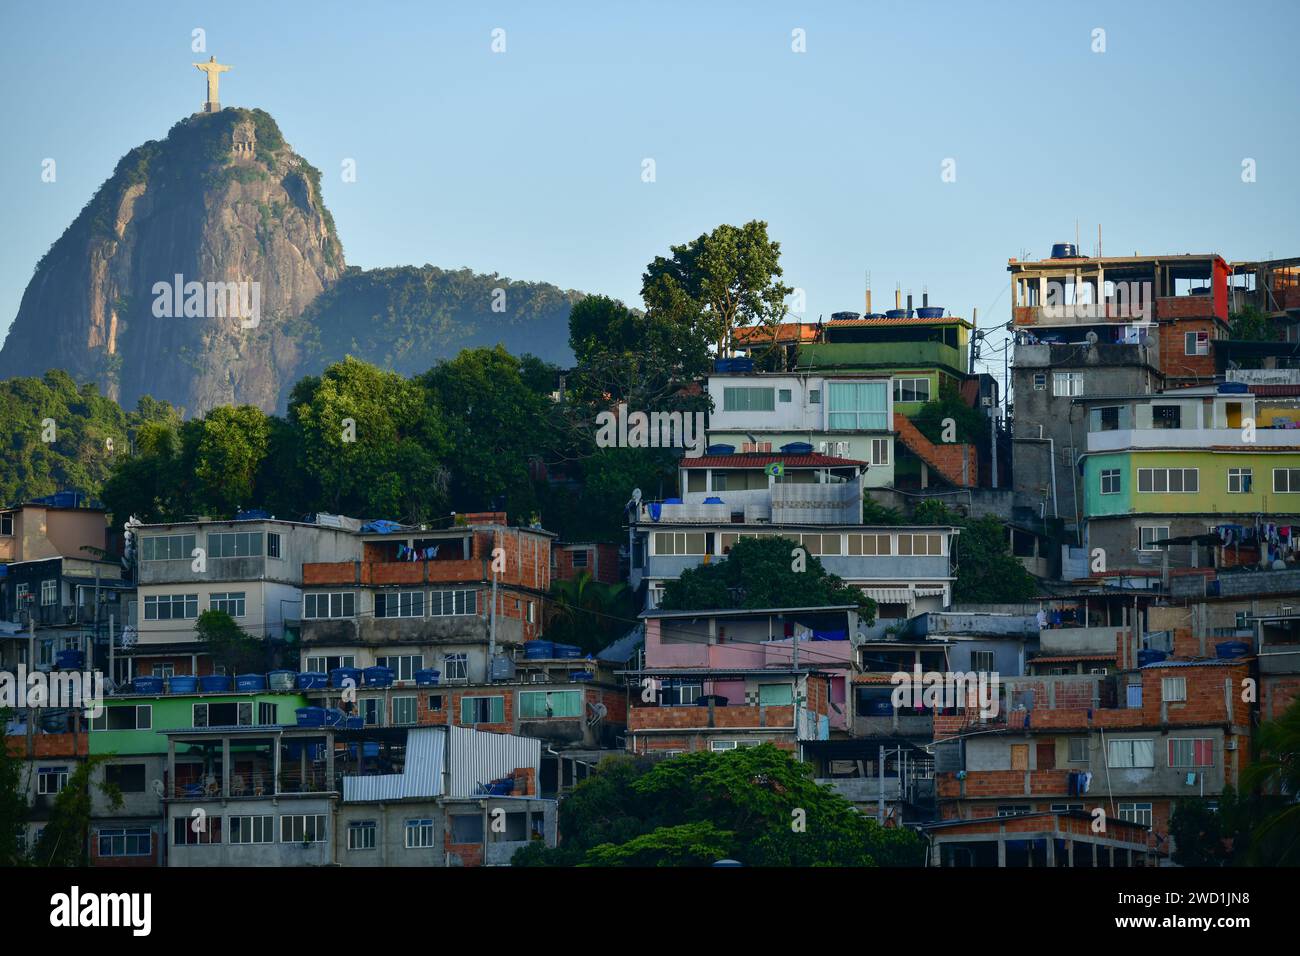 Favela de Tabaraja avec la montagne du Corcovado et la statue du Christ Rédempteur en arrière-plan, Rio de Janeiro, Brésil Banque D'Images